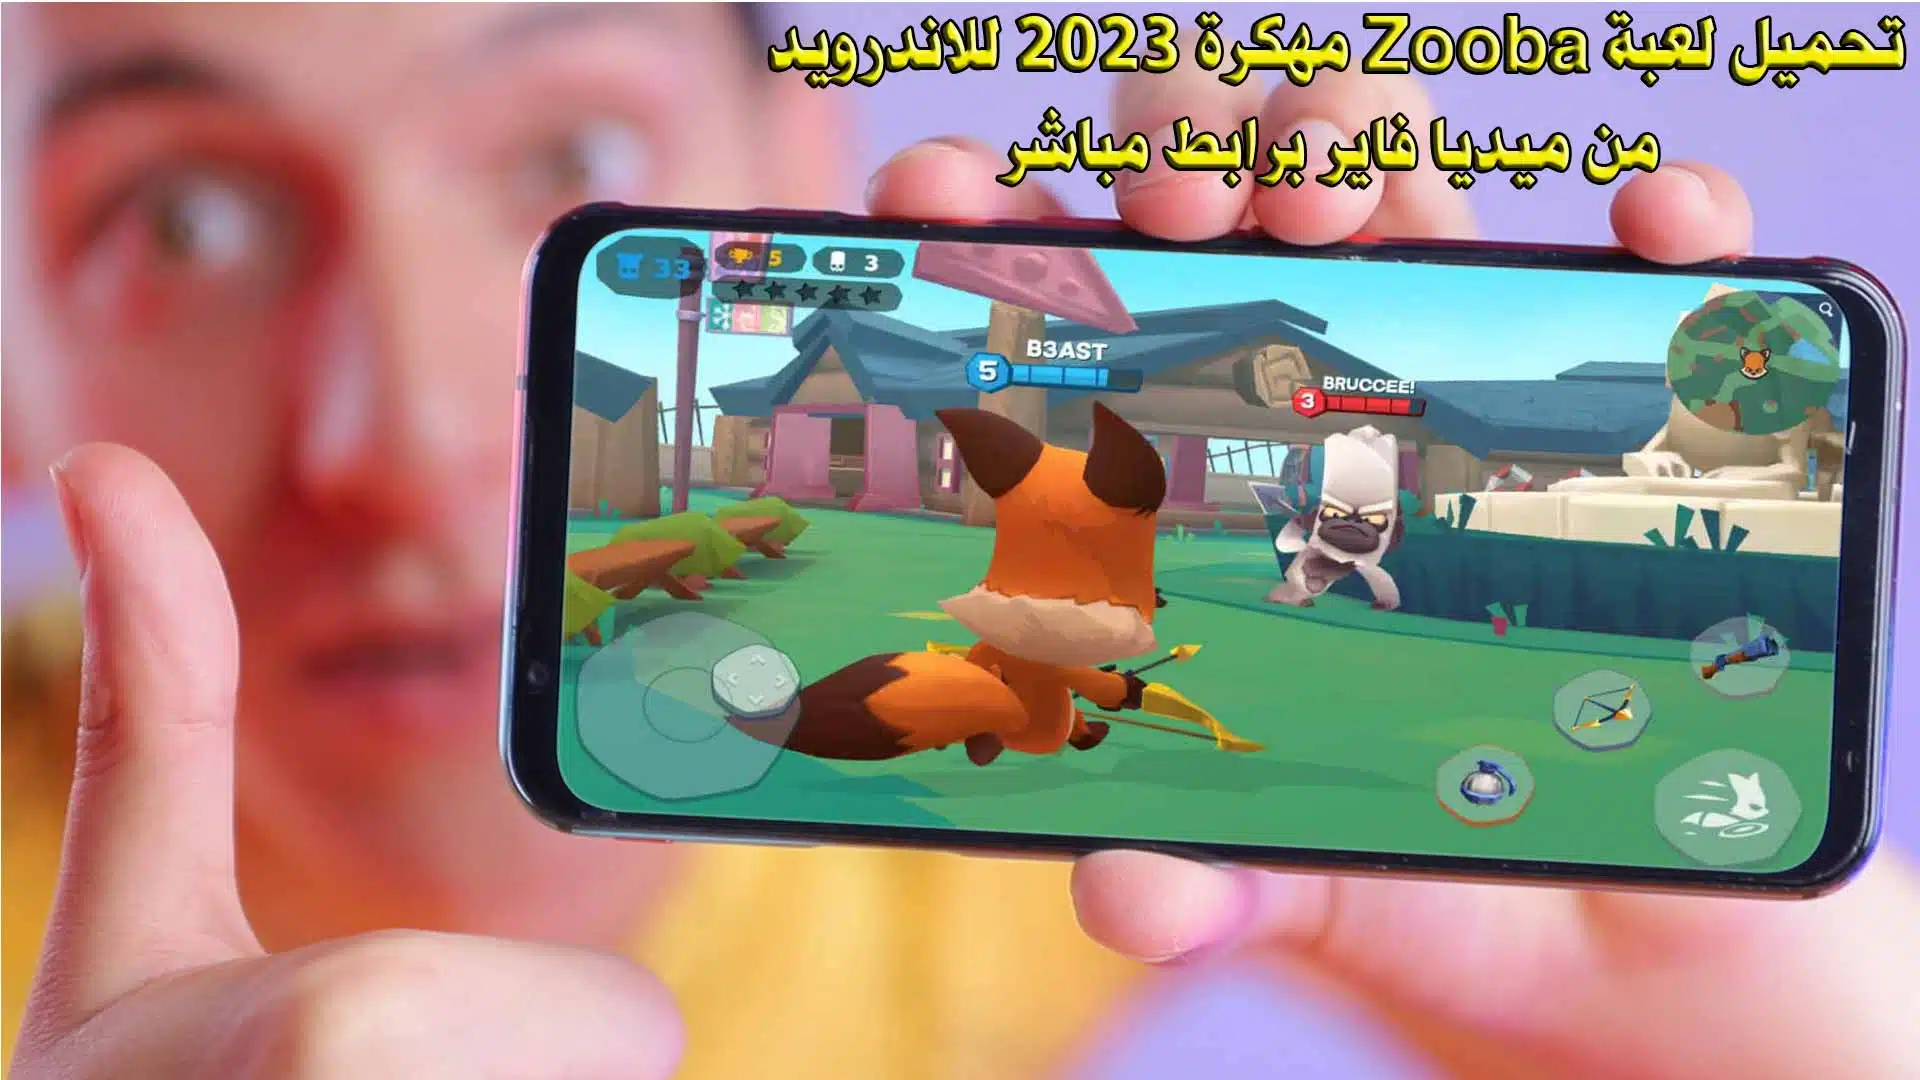 تحميل لعبة Zooba مهكرة 2023 للاندرويد من ميديا فاير برابط مباشر